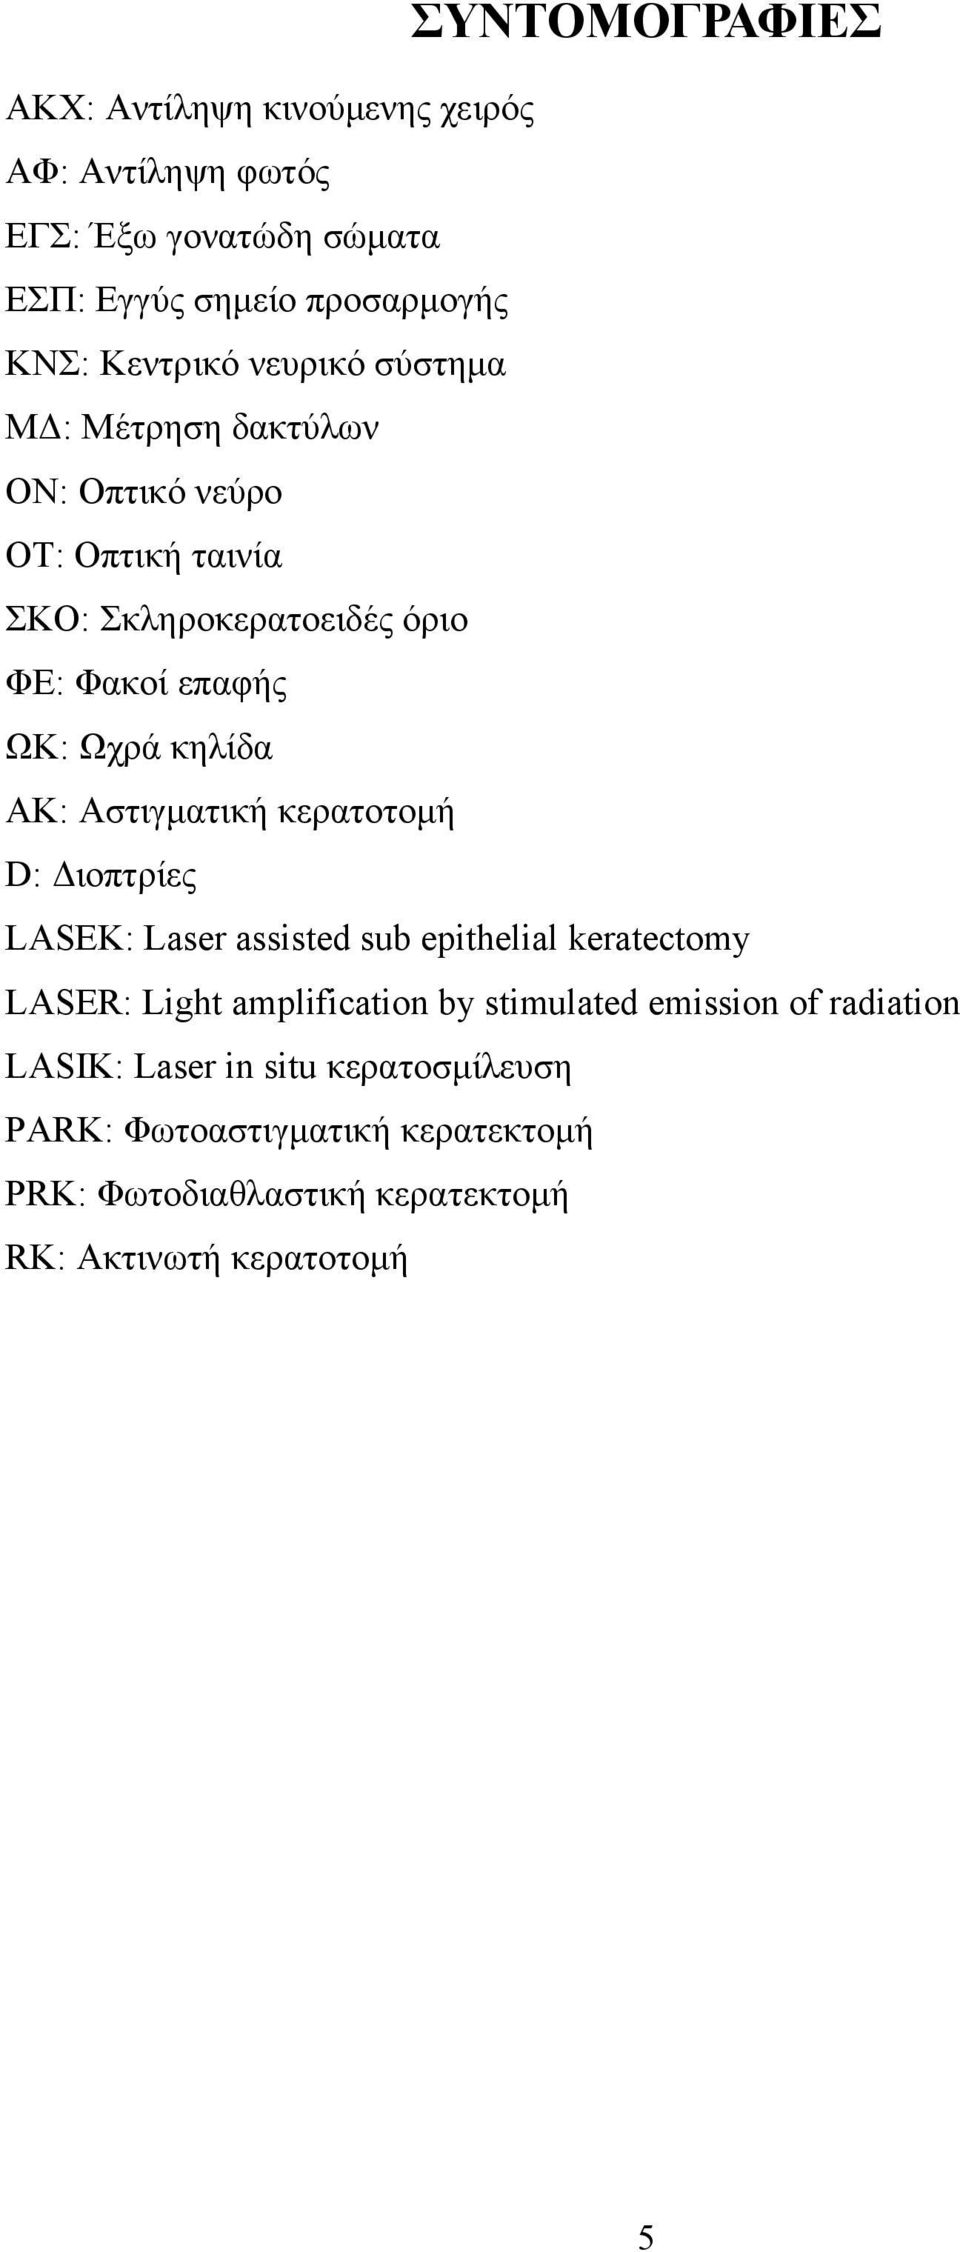 Αστιγματική κερατοτομή D: Διοπτρίες LASEK: Laser assisted sub epithelial keratectomy LASER: Light amplification by stimulated emission